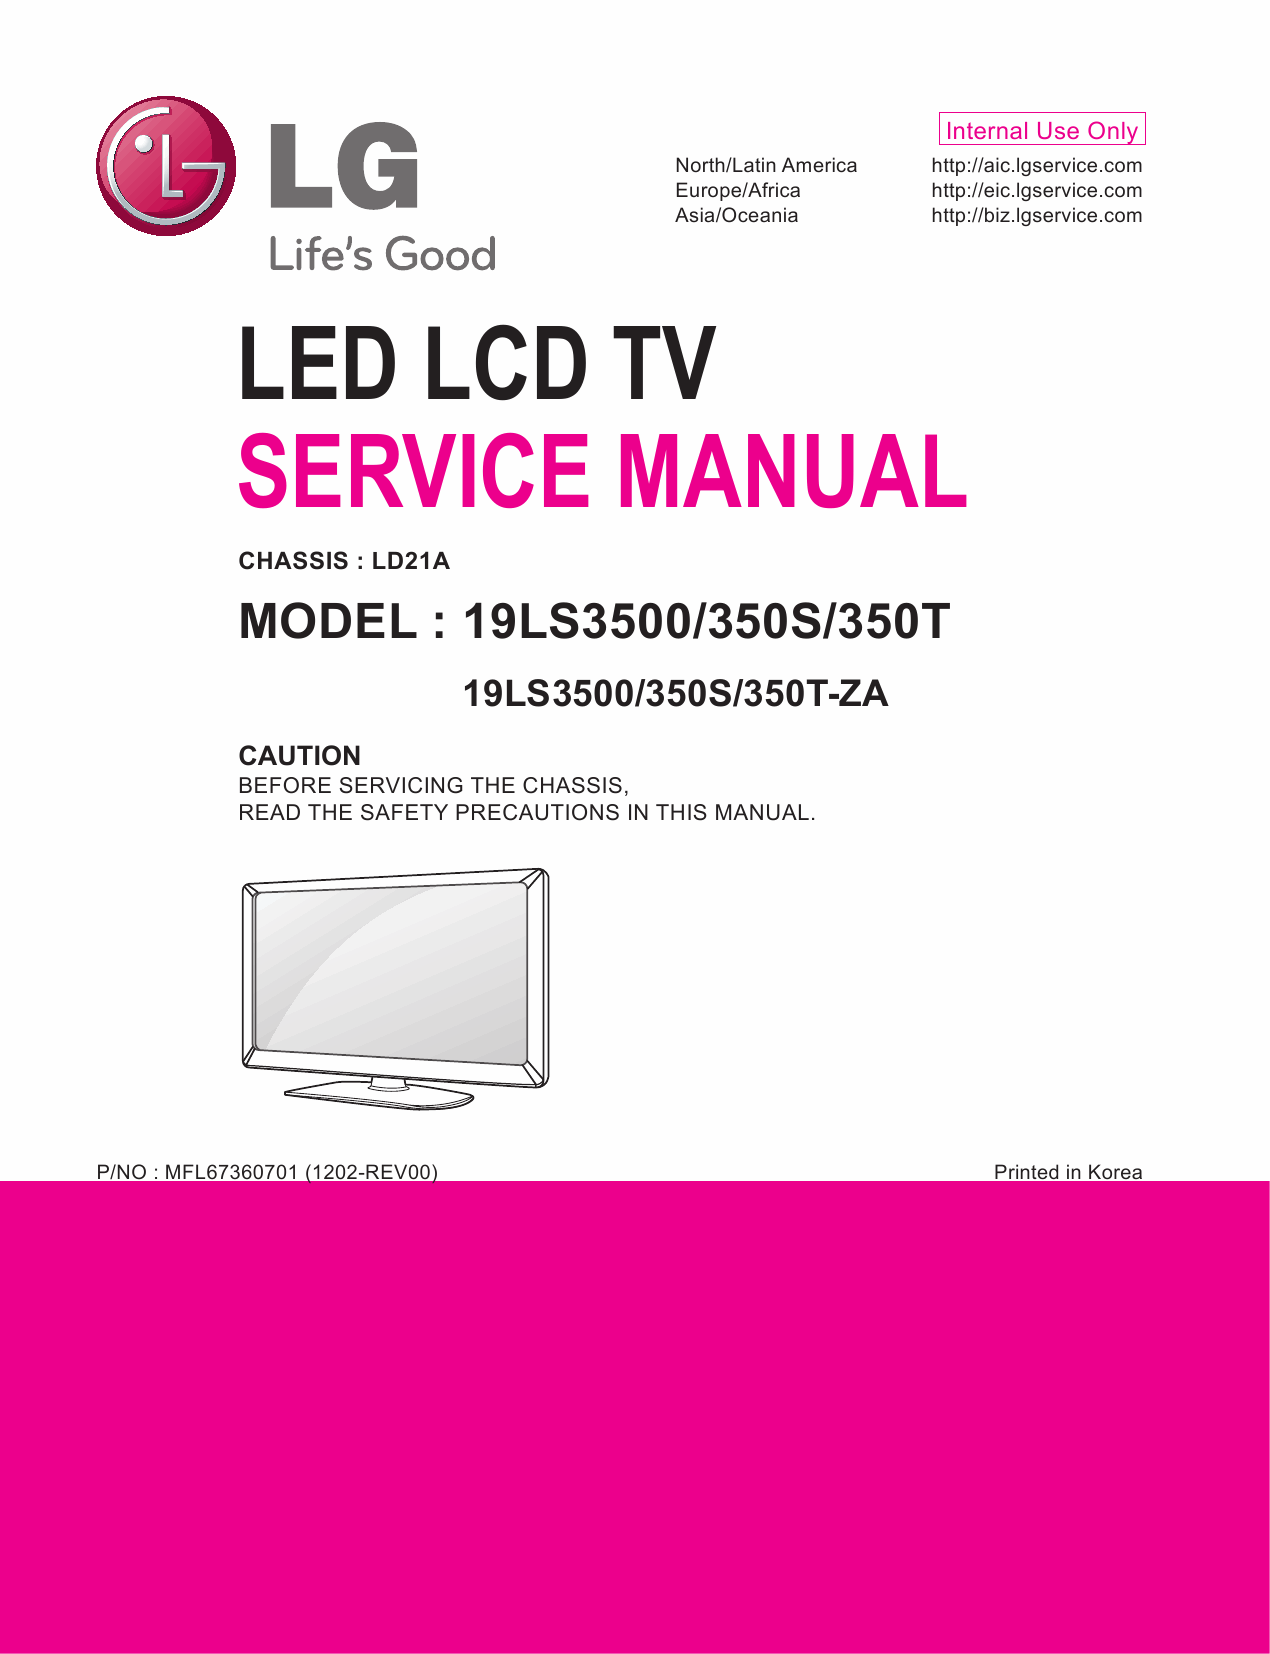 LG_LED_TV_19LS3500_350S_350T_Service_Manual_2012_Qmanual.com-1